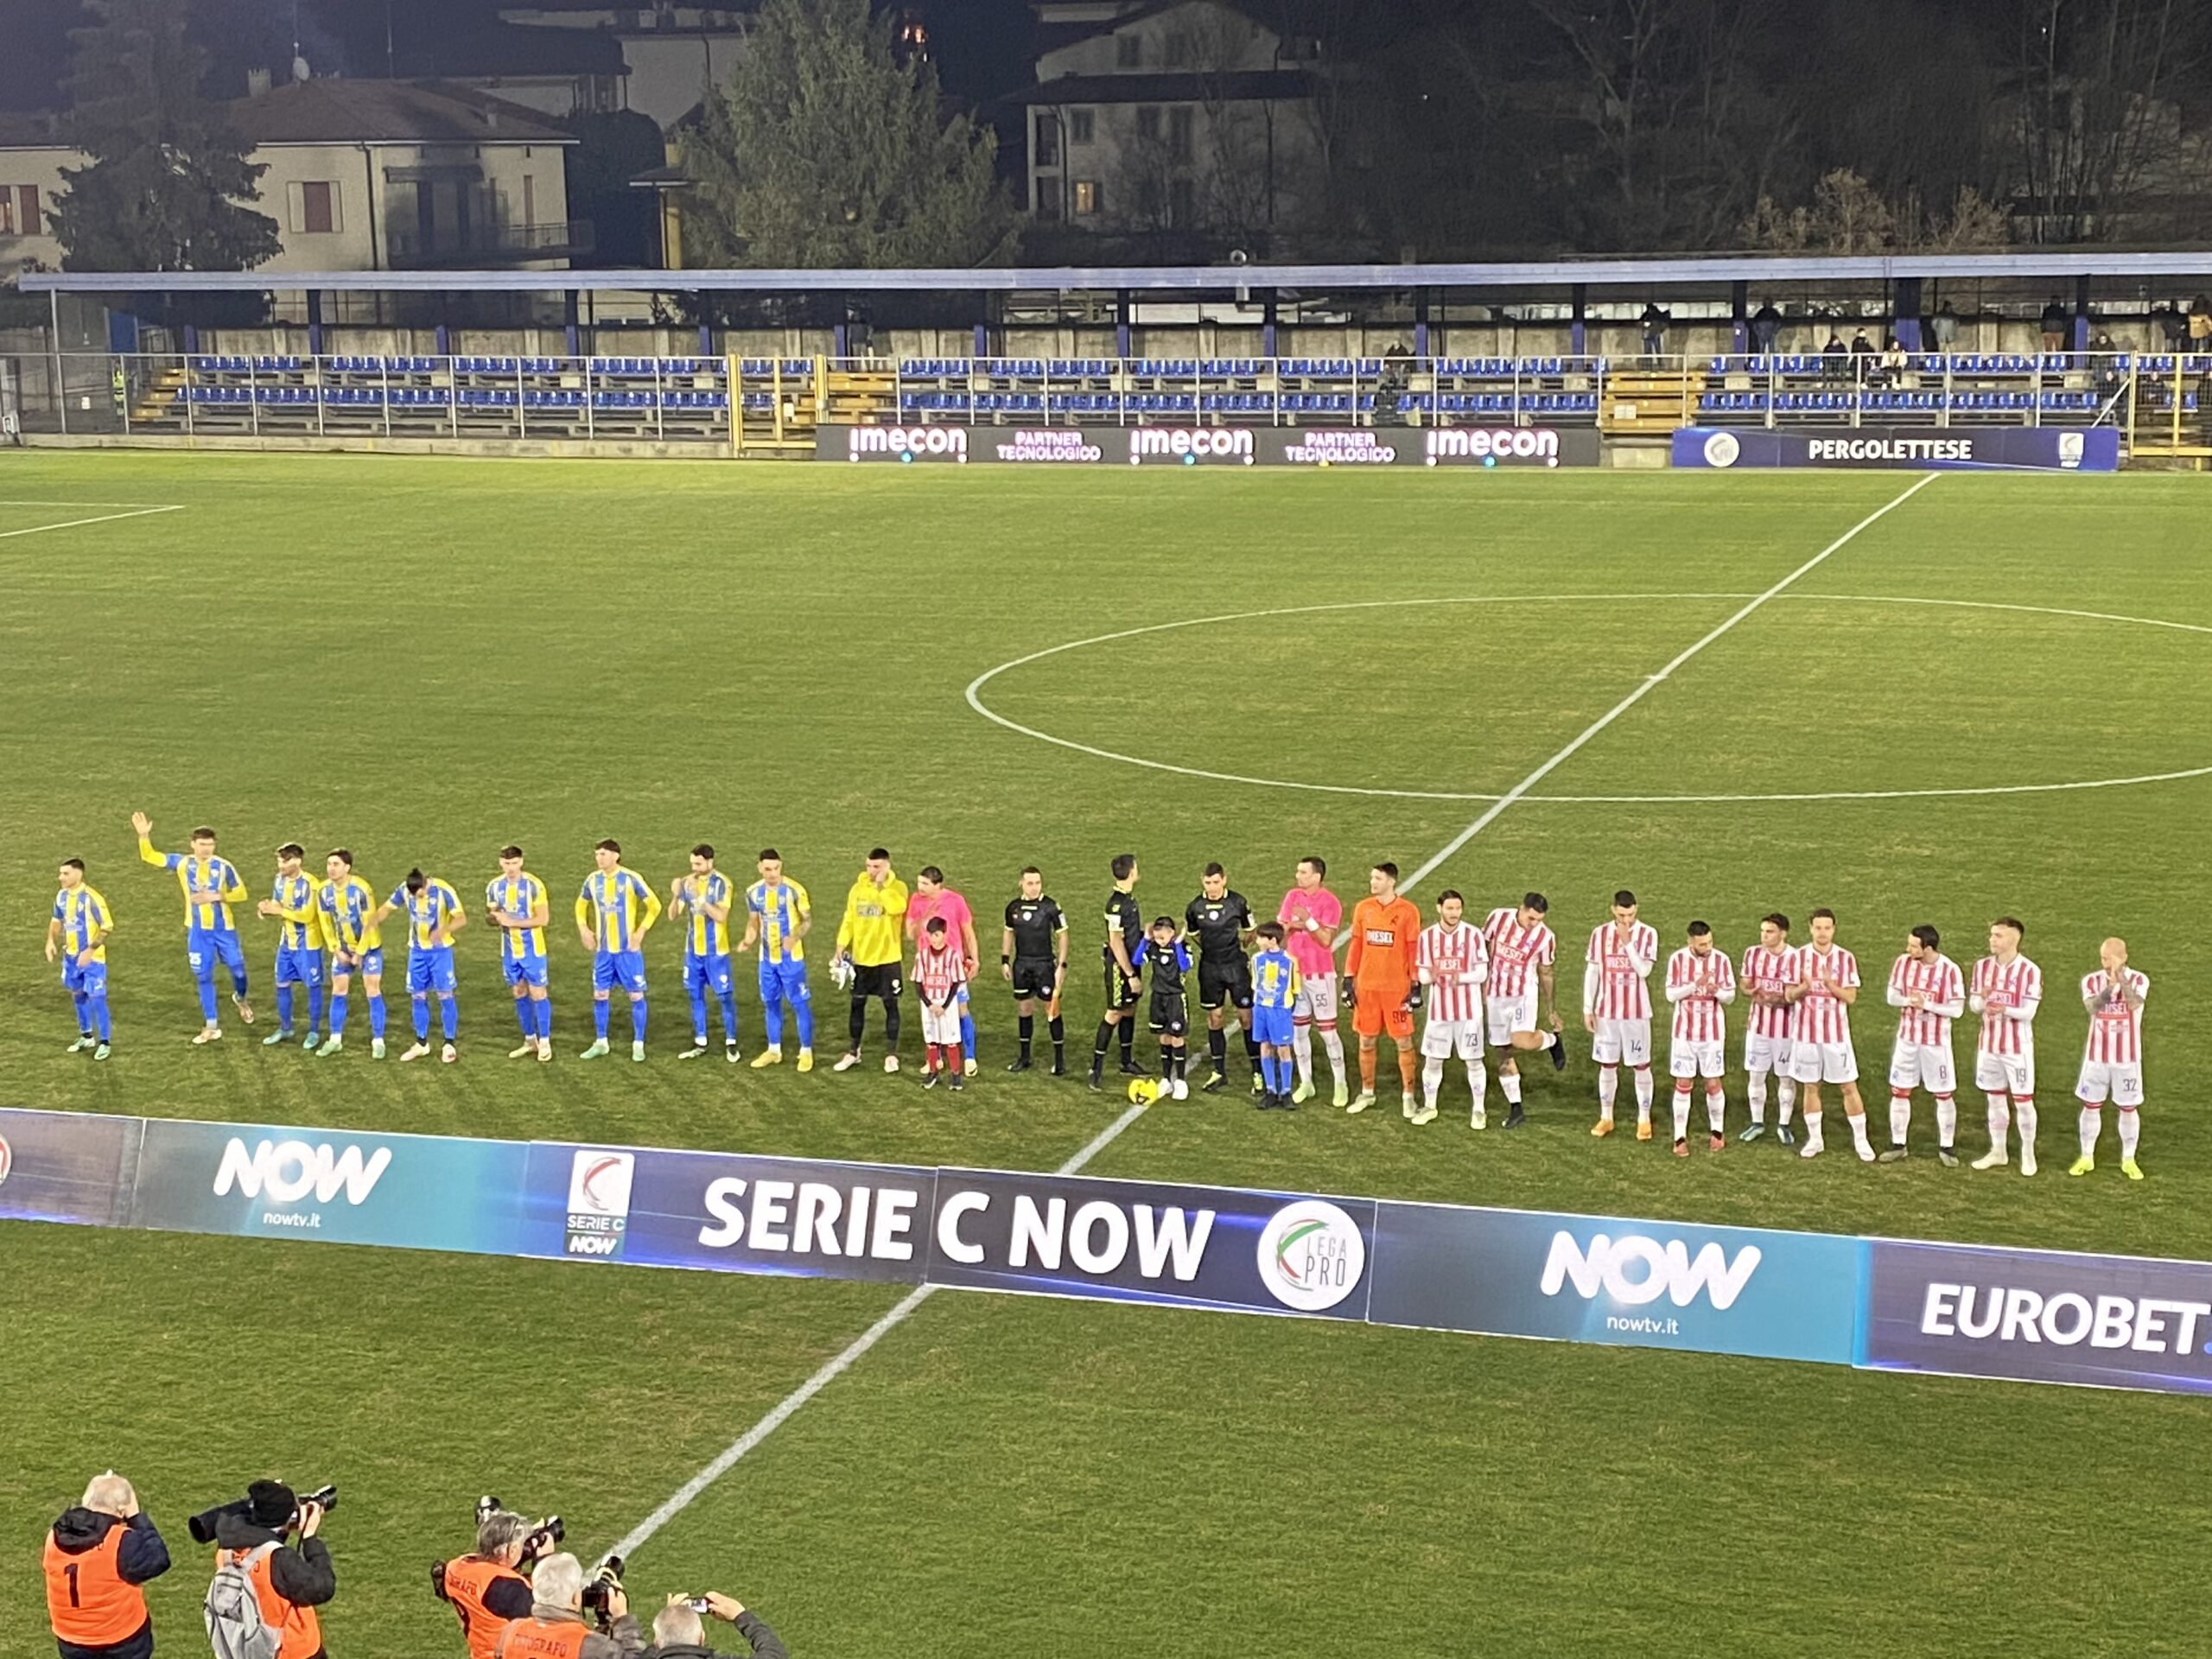 Pergolettese – L.R. Vicenza 0-2 (24^giornata)